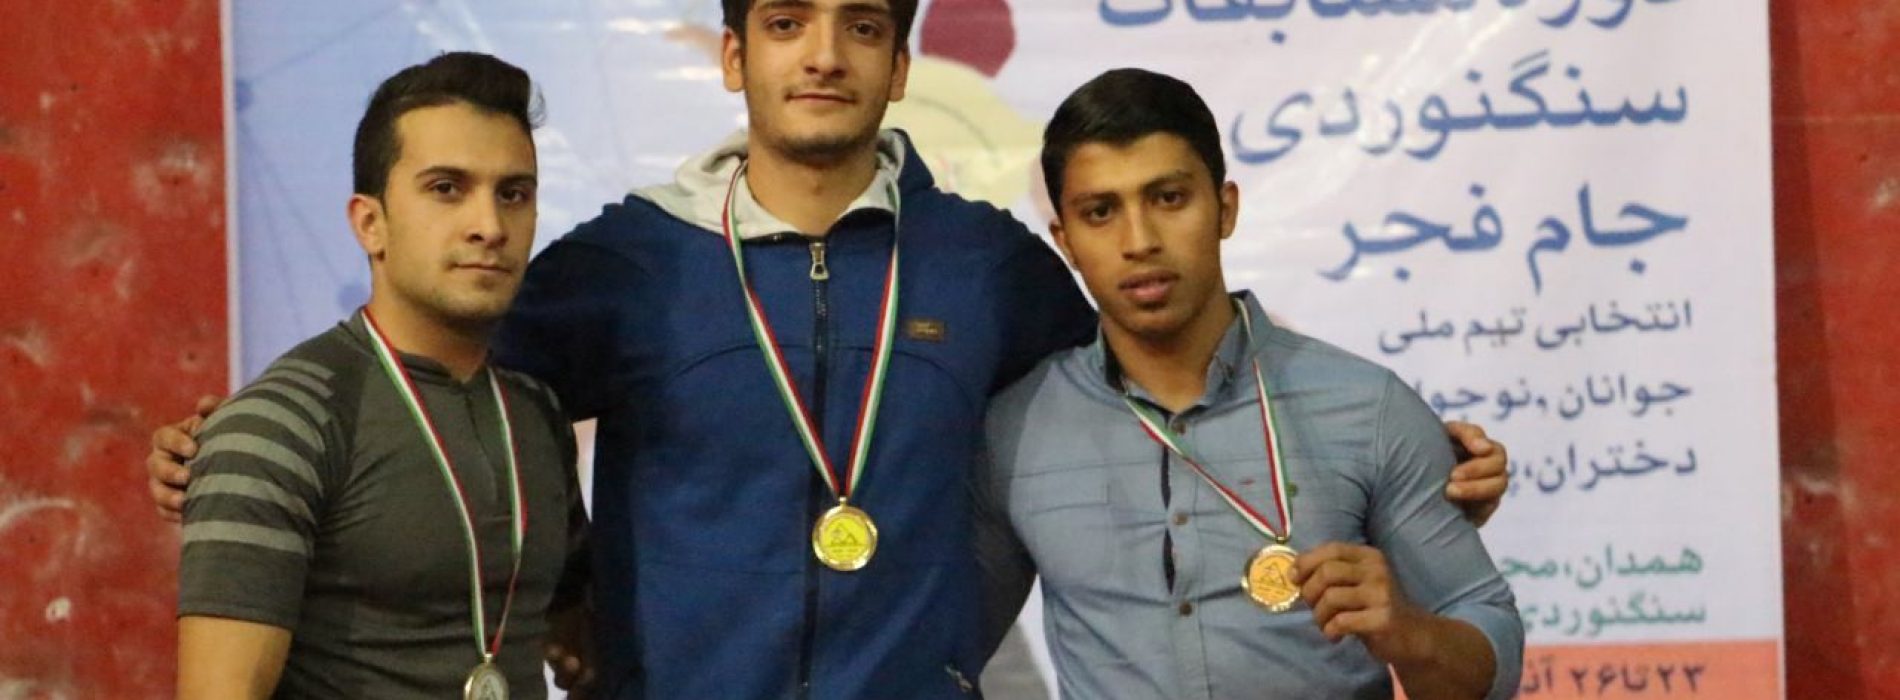 میلاد علیپور قهرمان سرعت مسابقات جام فجر شد